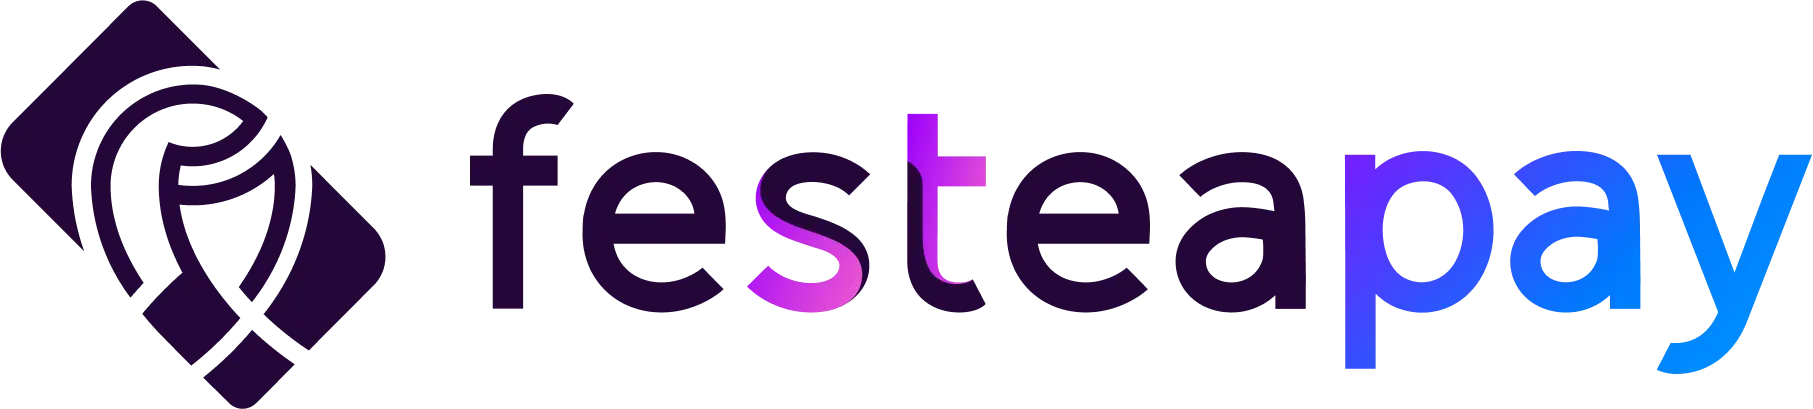 Festea Logo